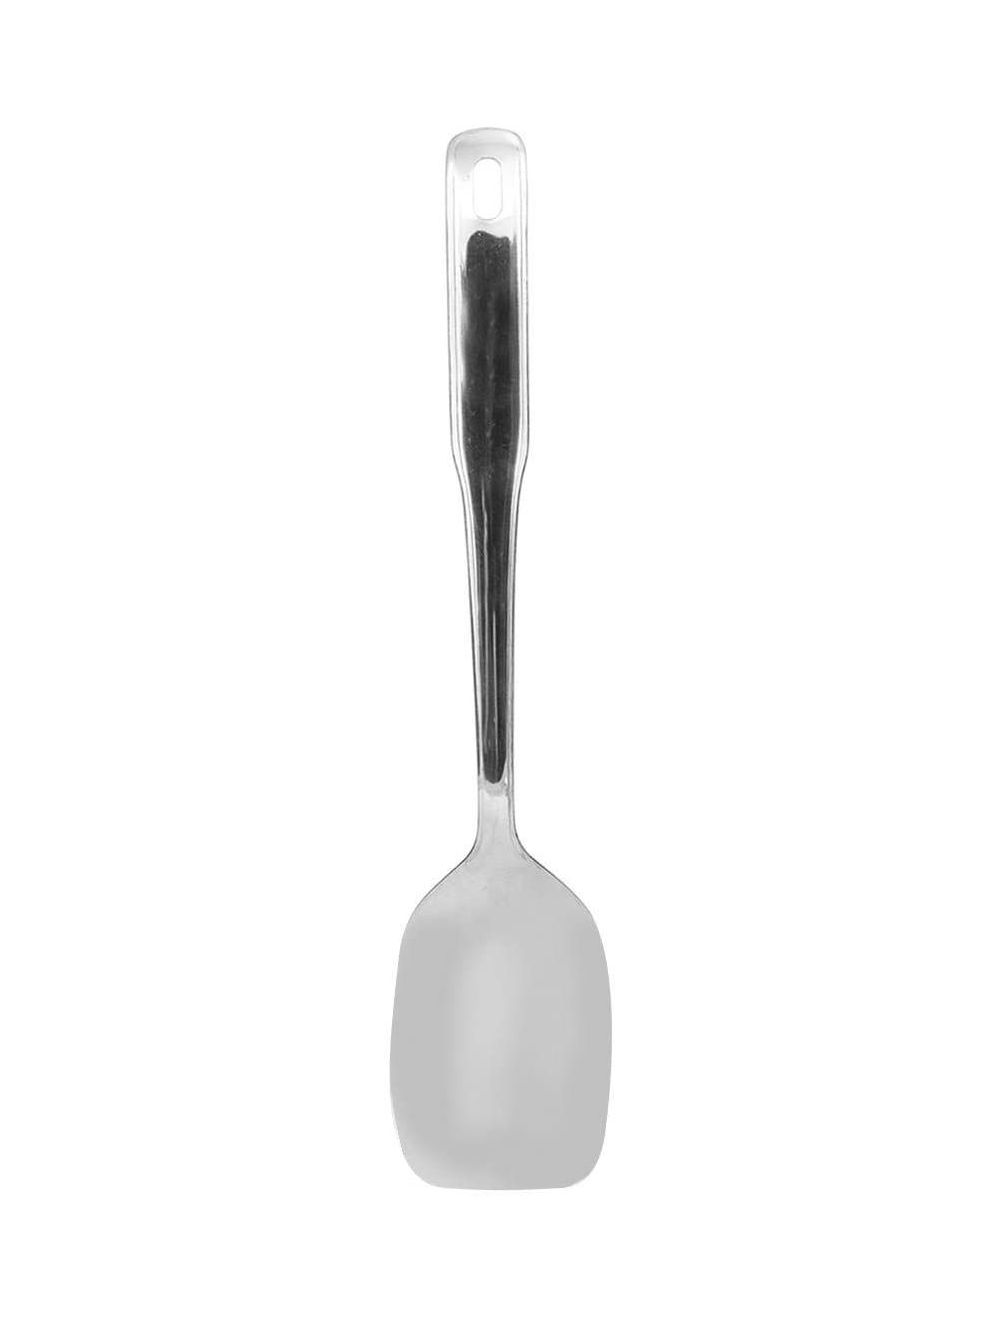 Raj 7 cm Royal Turner Spoon-RT0001, Silver